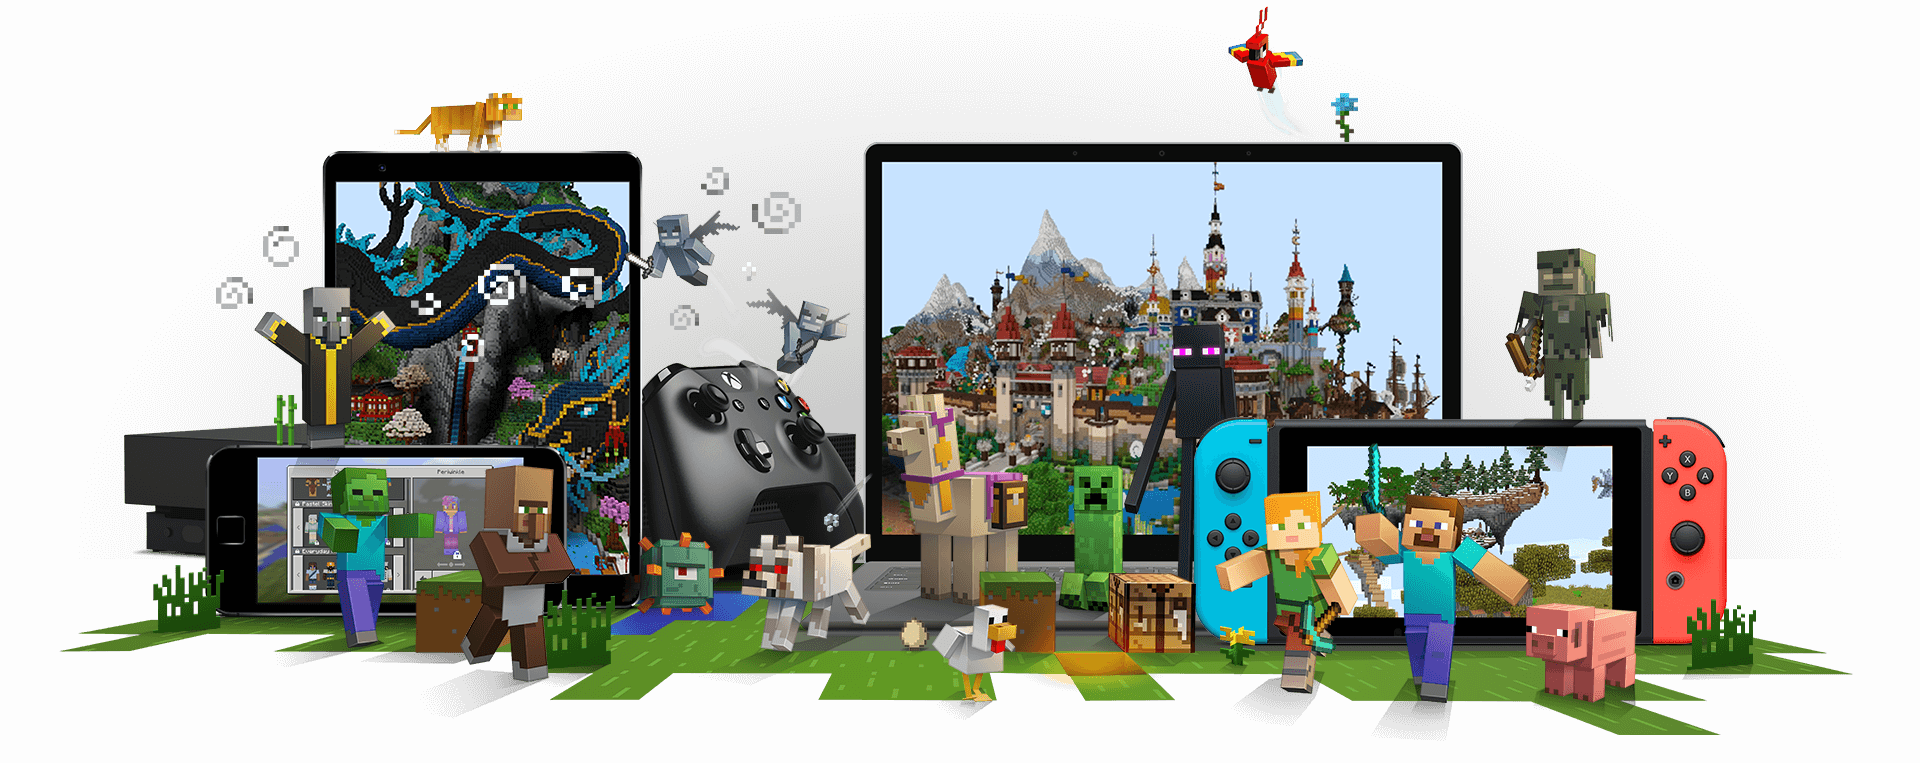 Minecraft-personages omringen apparaten waarop Minecraft speelbaar is, waaronder een Xbox, een mobiele telefoon, een laptop en een Nintendo Switch.